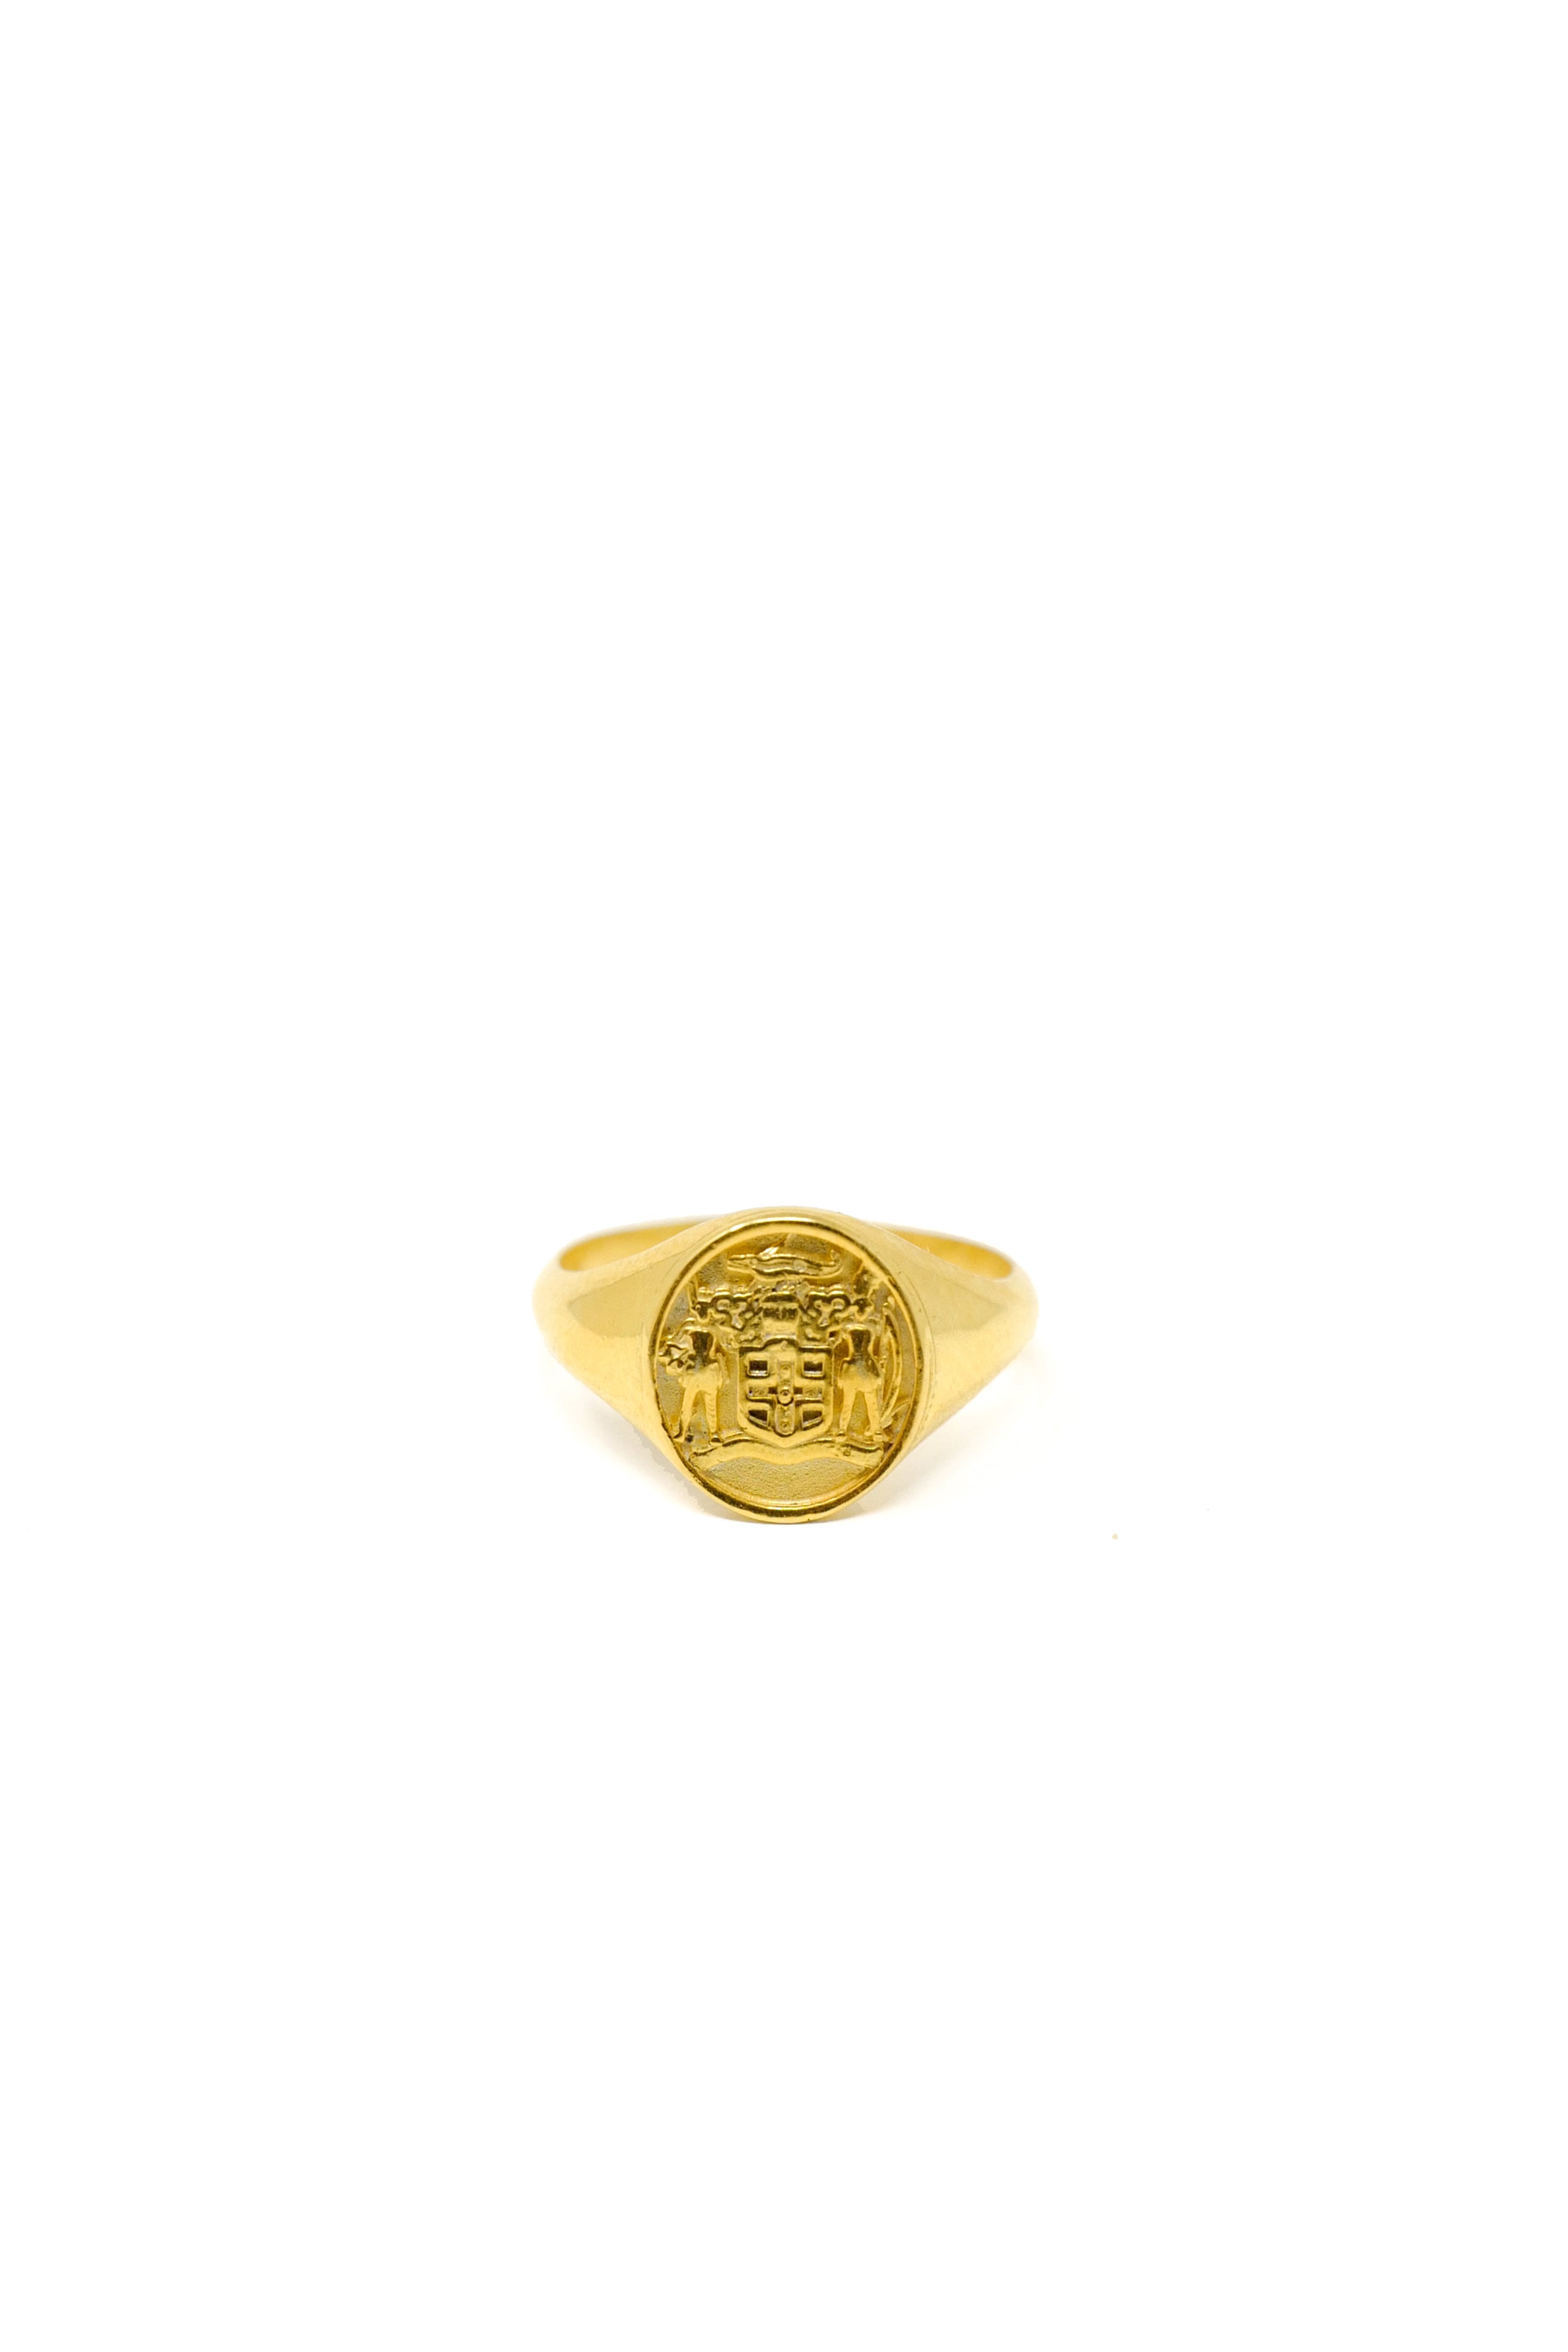 THE JAMAICA Crest Signet Ring I